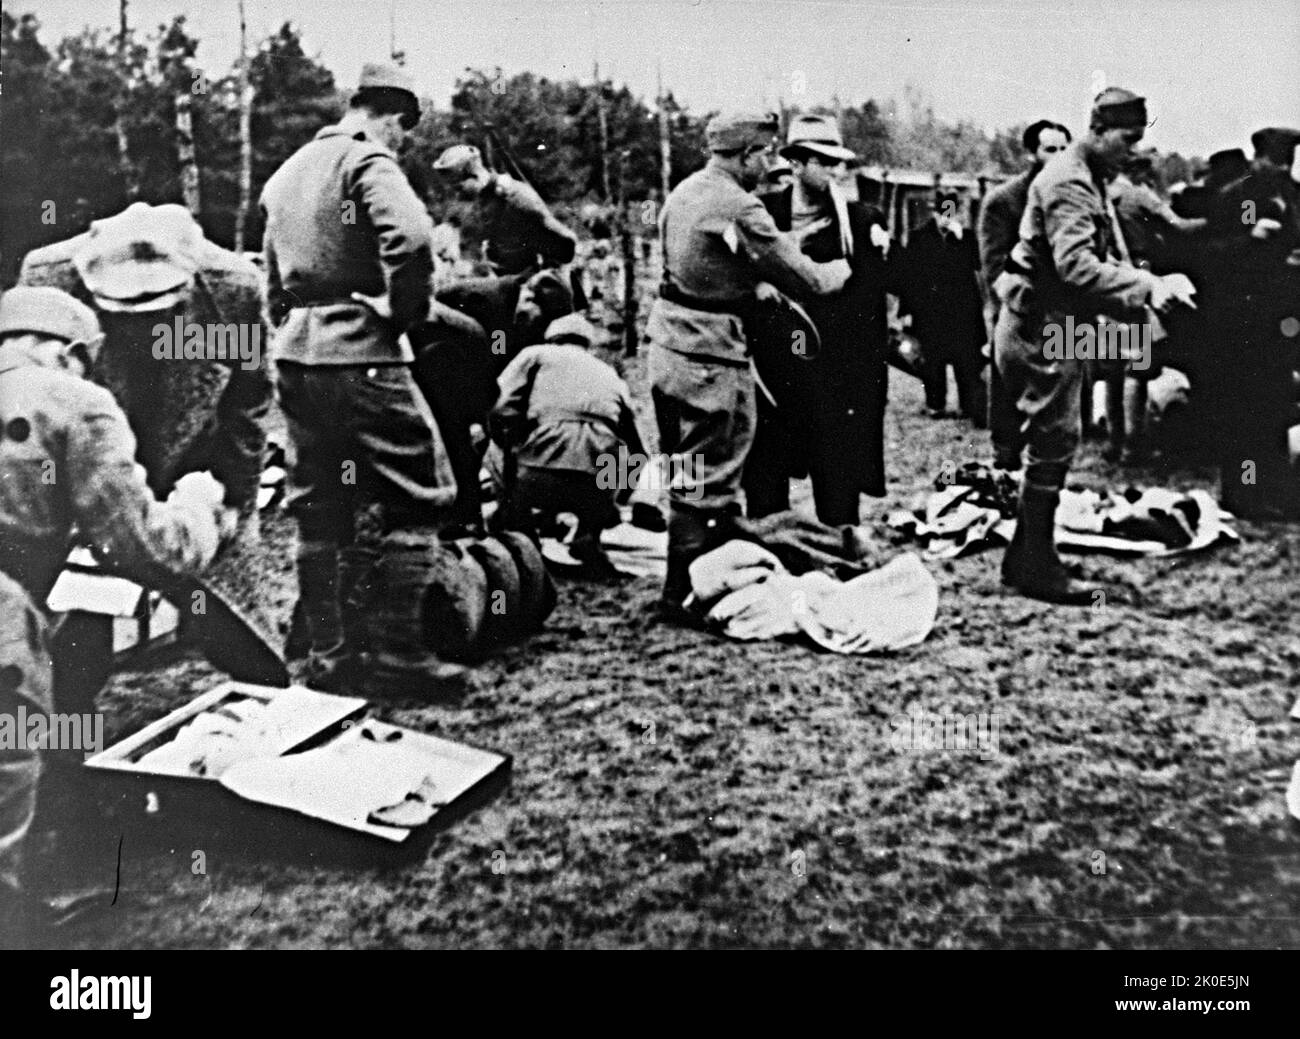 Die Ustasa in Jasenovac beschlagnahmt die Habseligkeiten der neu angekommenen Gefangenen. Die Ustasa (kroatische revolutionäre Bewegung) oder Ustase war zwischen 1929 und 1945 eine kroatische faschistische Organisation. Jasenovac war ein Konzentrations- und Vernichtungslager, das im besetzten Jugoslawien während des Zweiten Weltkriegs errichtet wurde Stockfoto